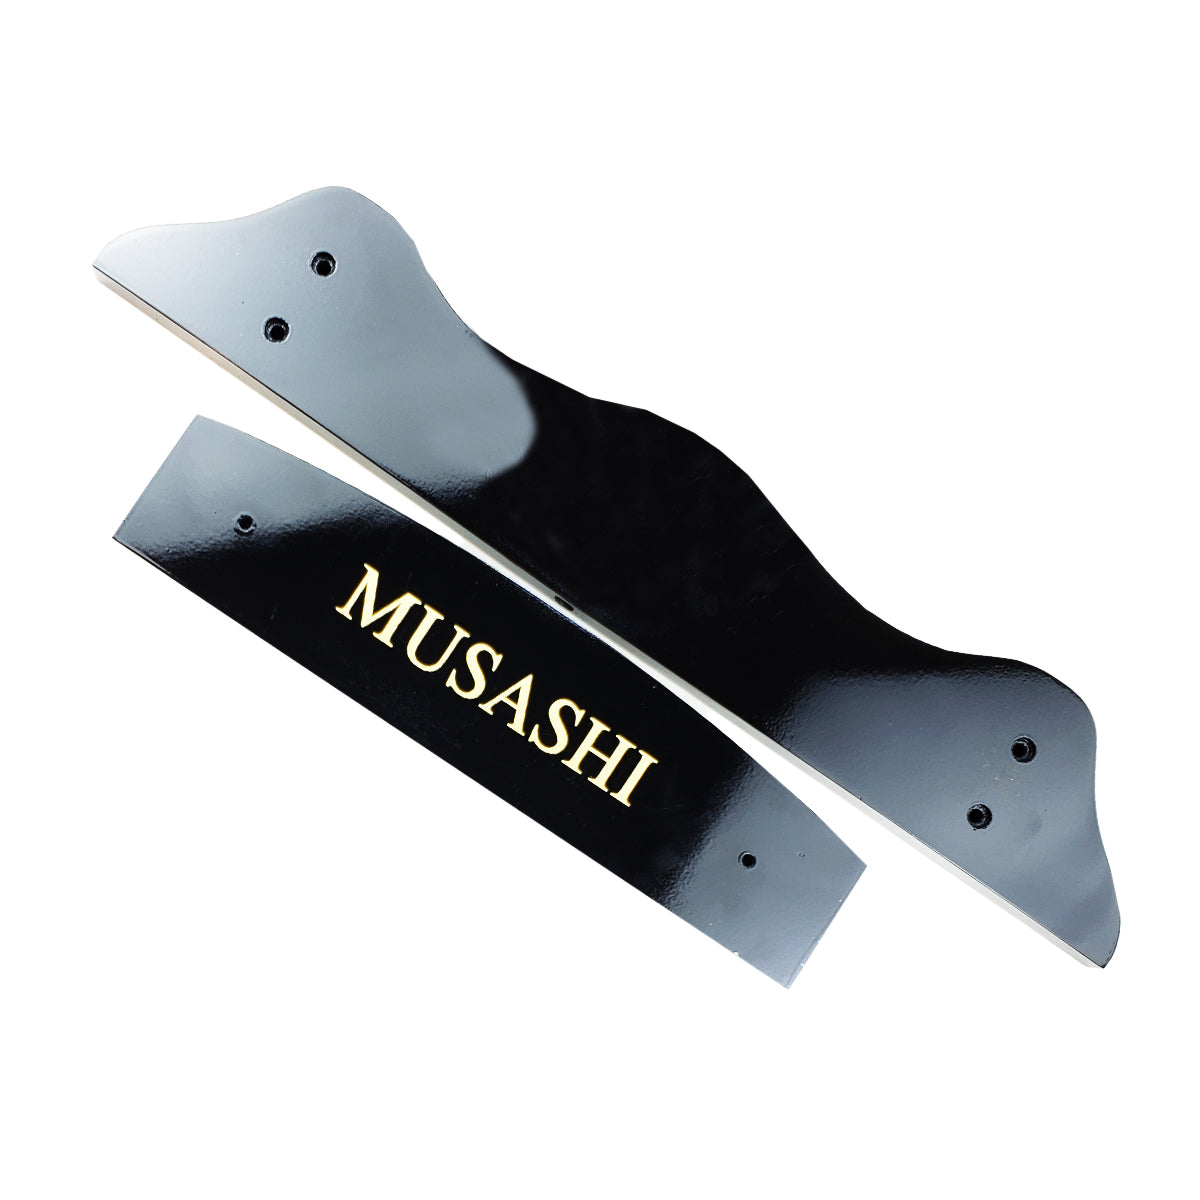 Musashi Single Sword Stand